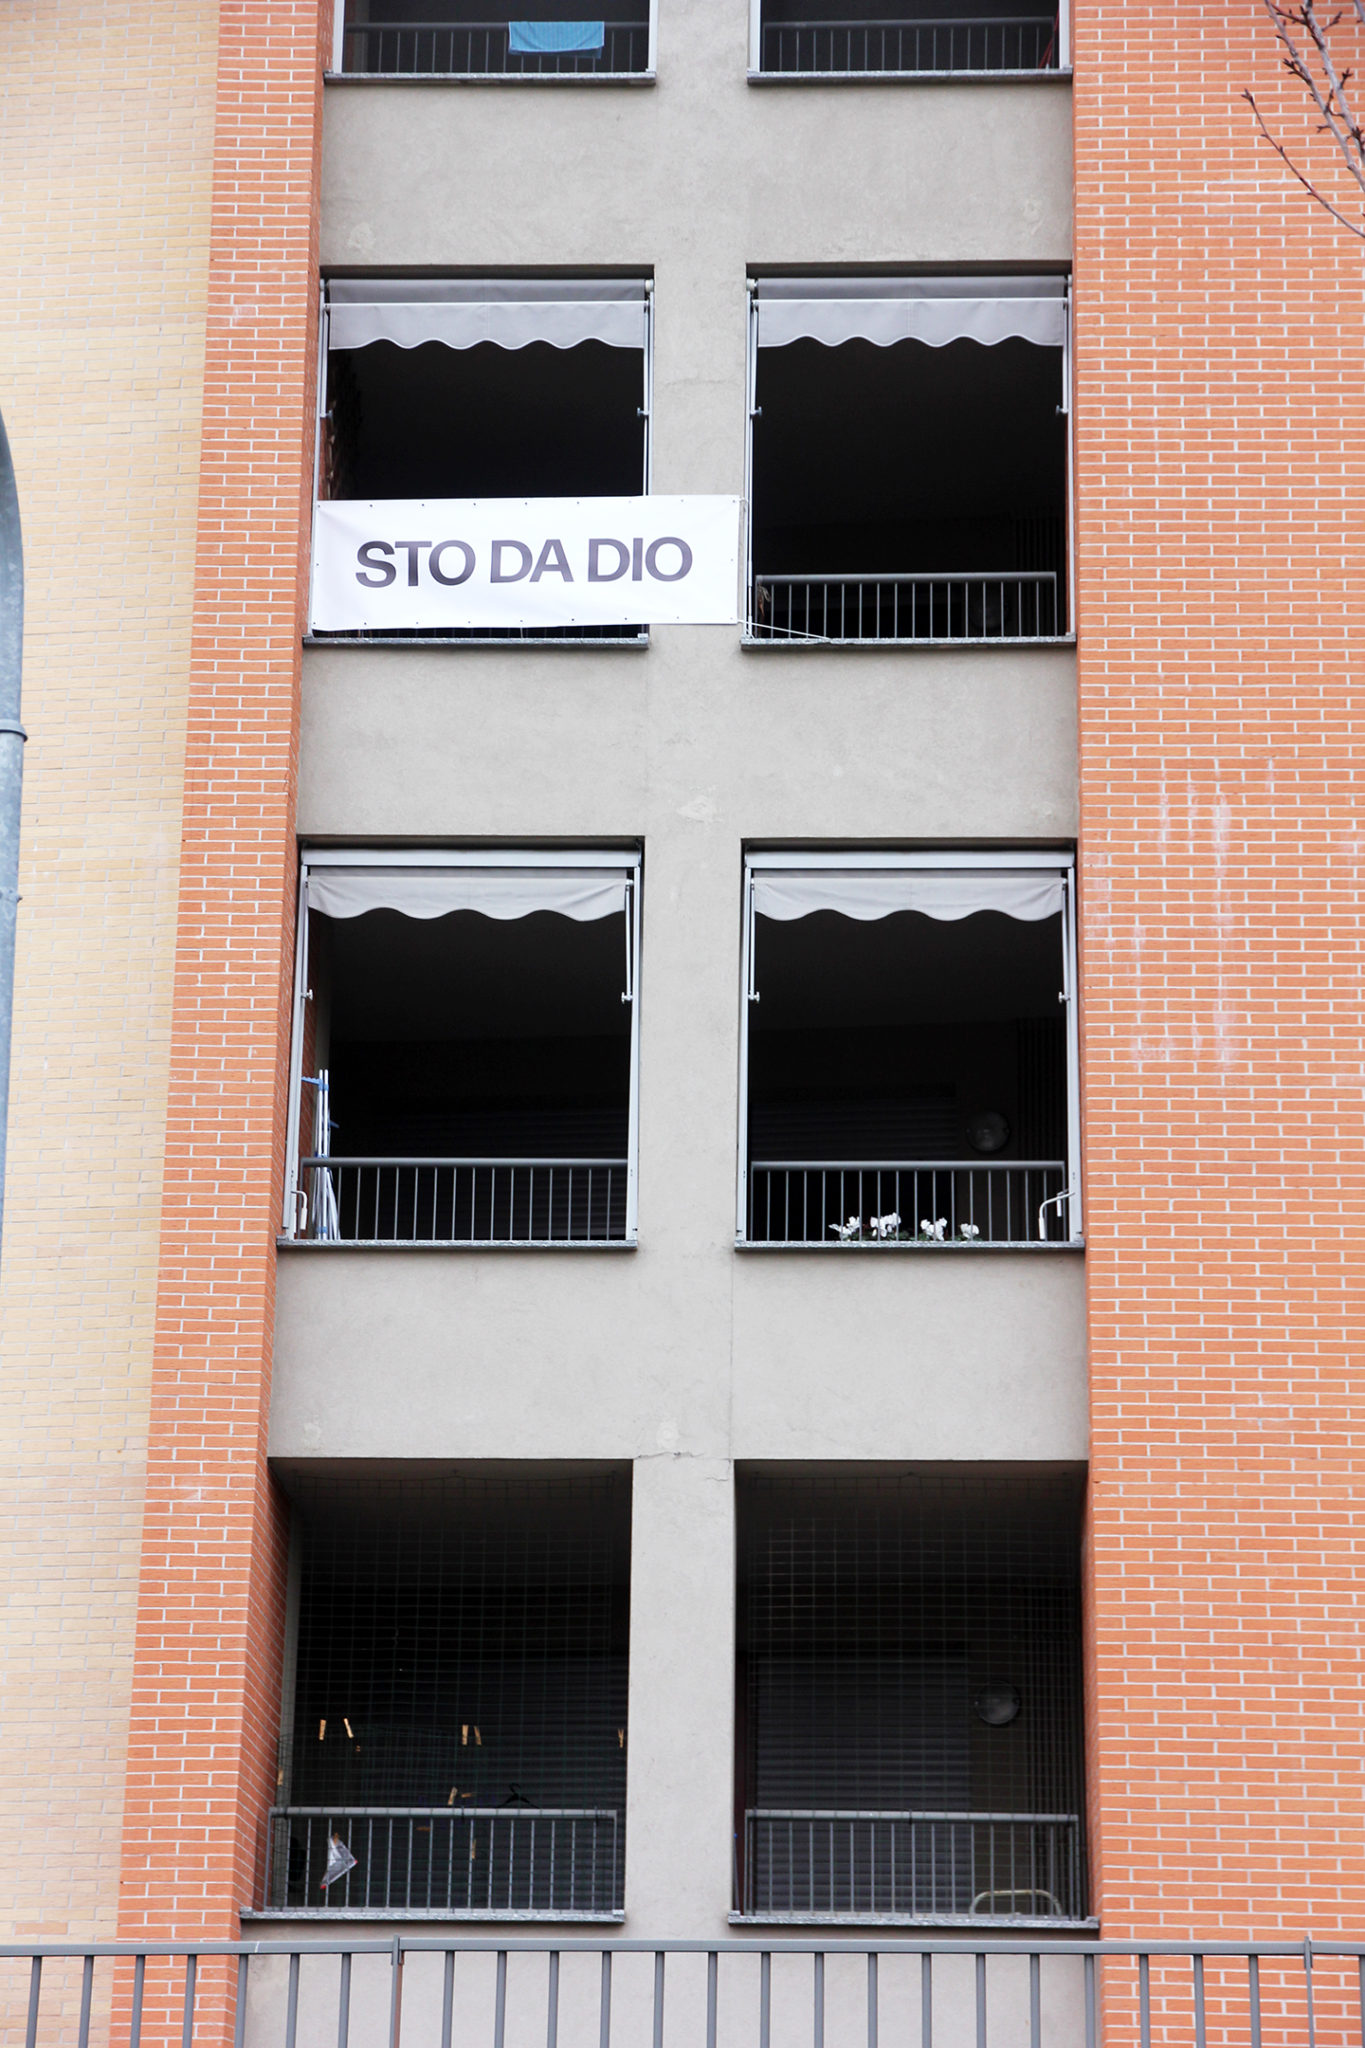 Periferia nord est di Milano, al centro del progetto di arte pubblica Adriano A Cielo Aperto: 47 balconi del quartiere espongono le voci degli abitanti